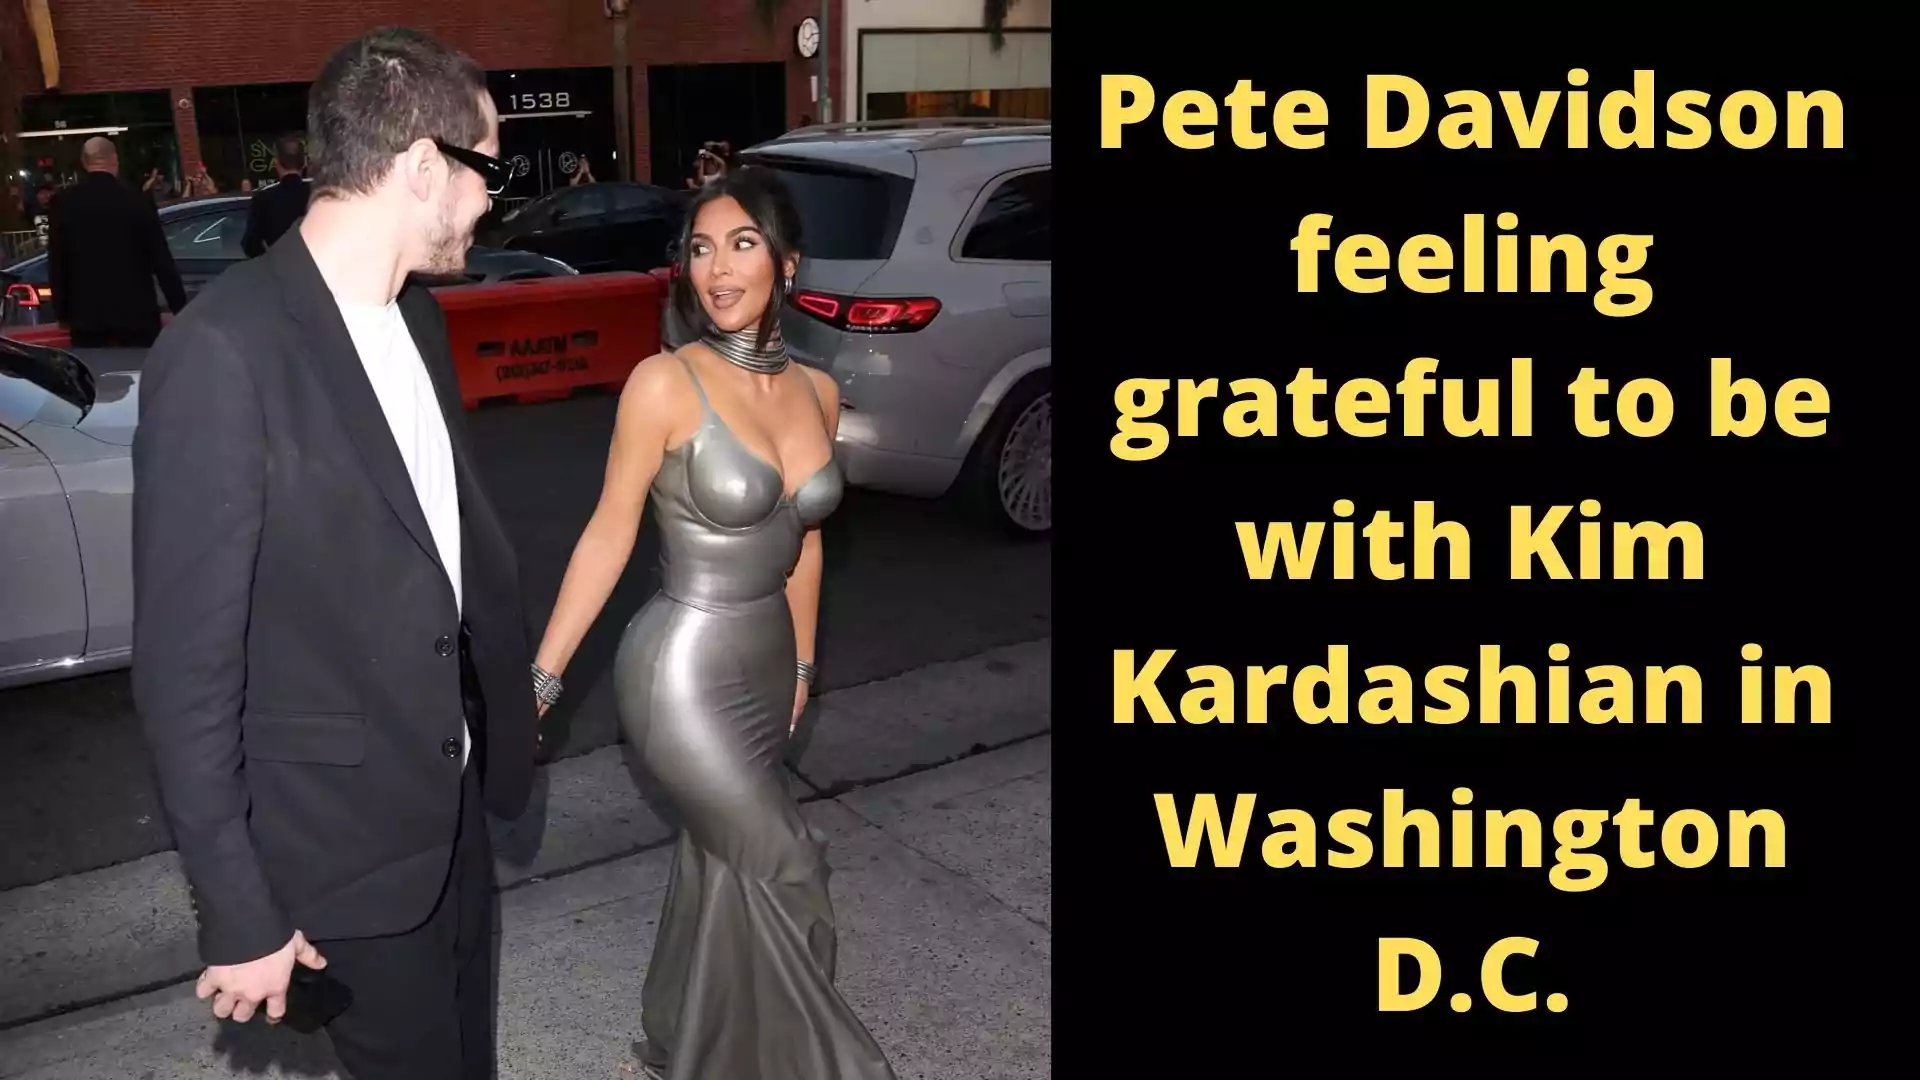 Pete Davidson feeling grateful to be with Kim Kardashian in Washington D.C.